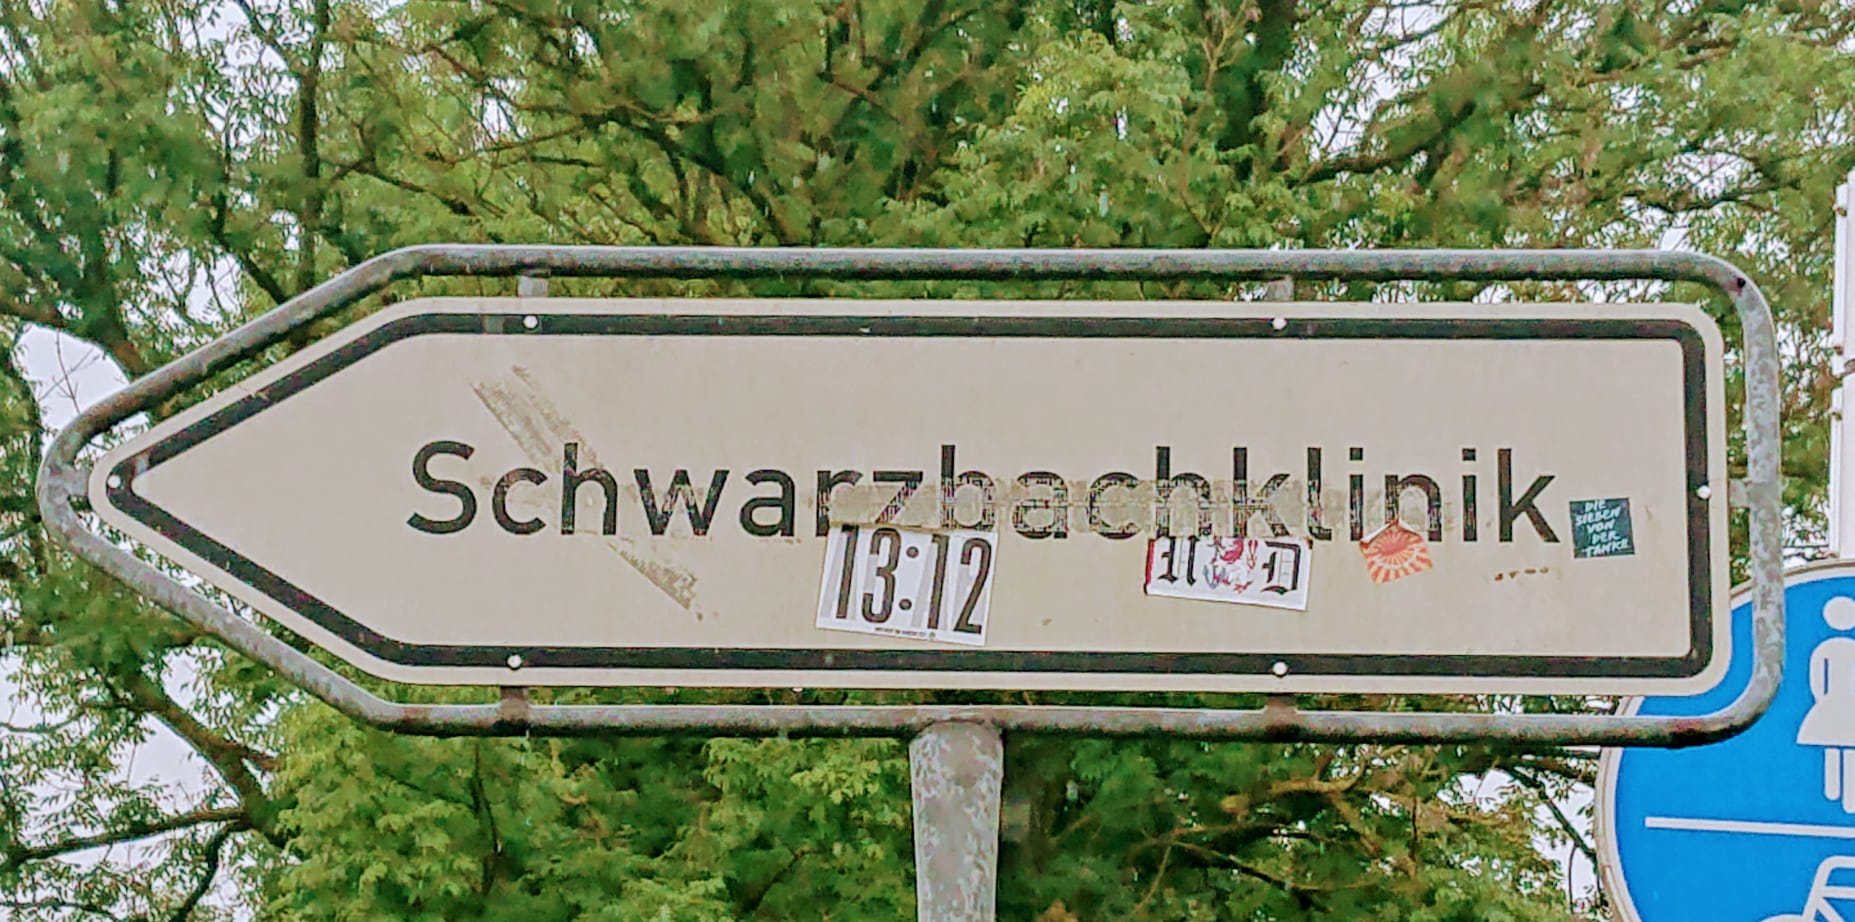 Wir waren zu Besuch in der Schwarzbachklinik (haben dort aber nicht fotografiert, hier sieht man nur das Straßenschild).